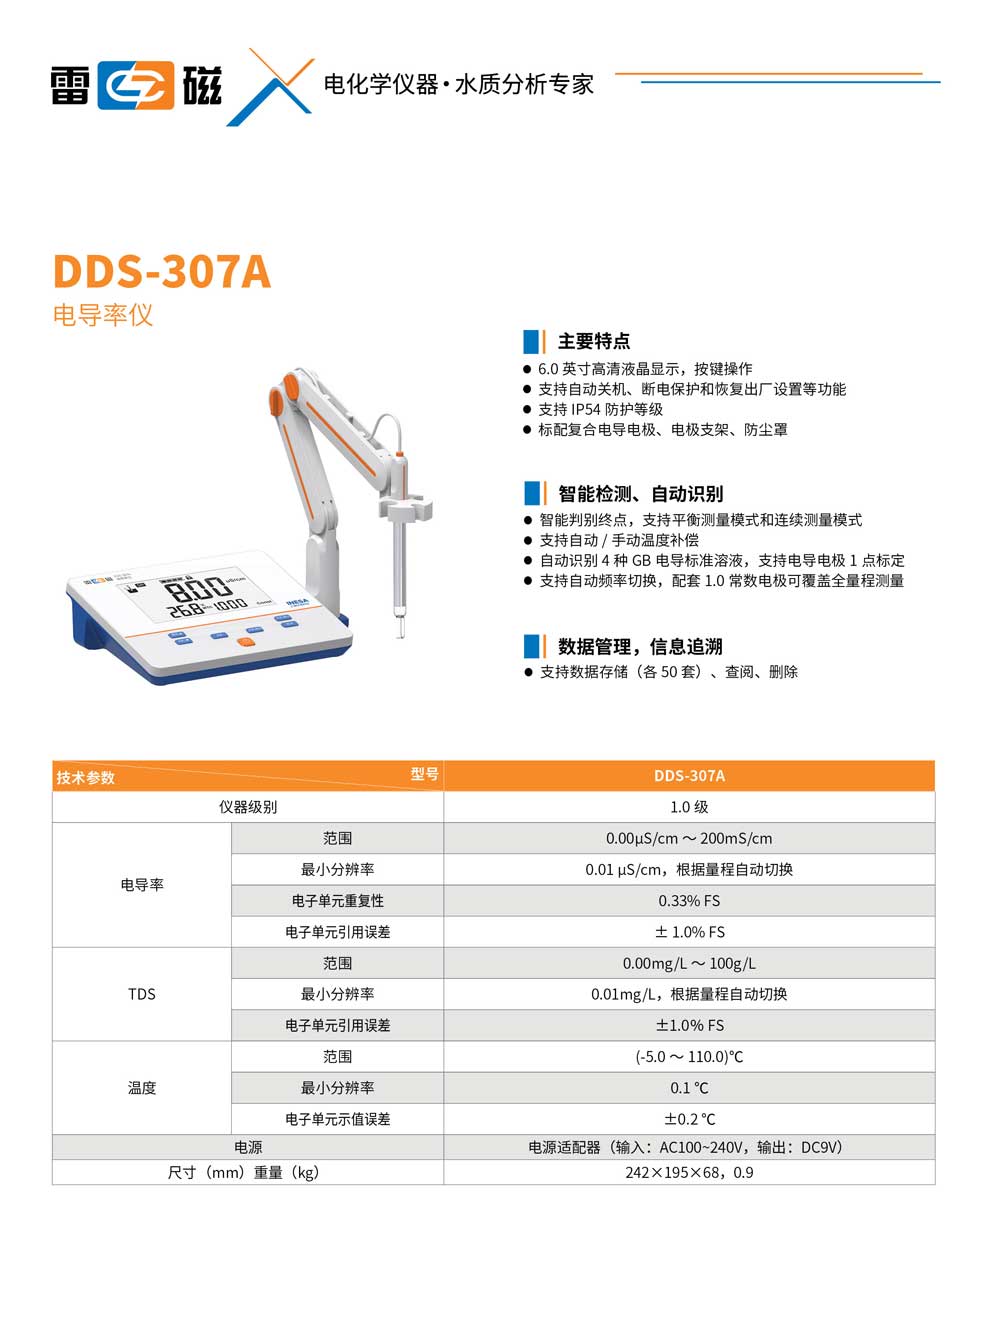 DDS-307A-彩页.jpg